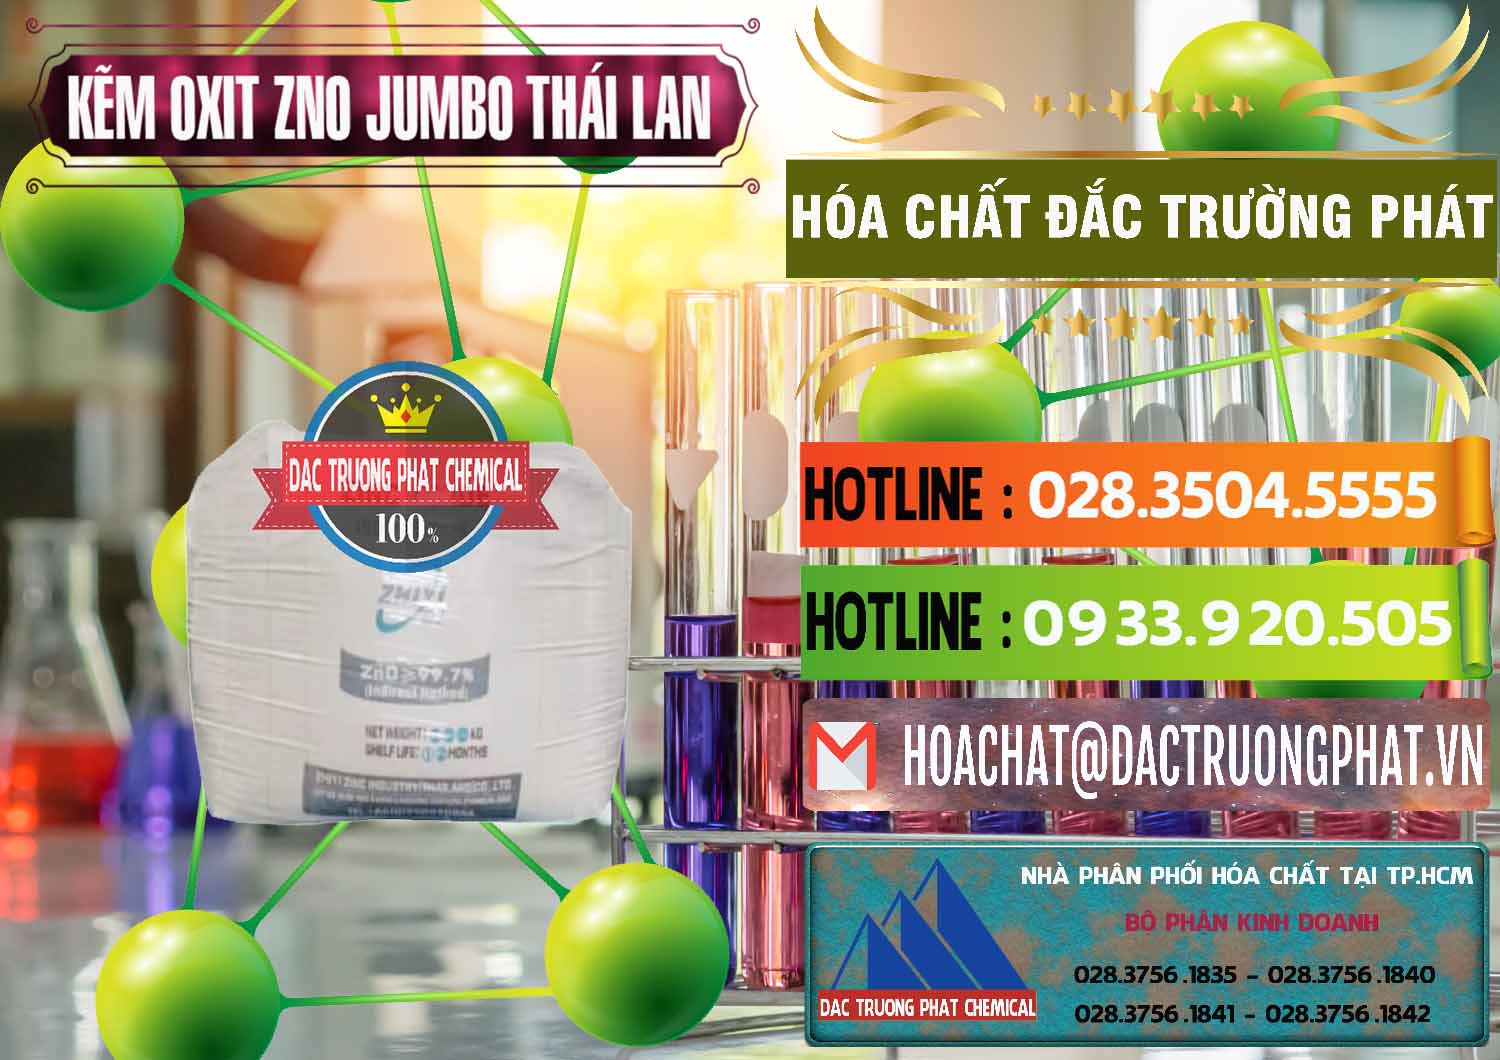 Đơn vị chuyên bán và cung cấp Zinc Oxide - Bột Kẽm Oxit ZNO Jumbo Bành Thái Lan Thailand - 0370 - Nơi chuyên phân phối và bán hóa chất tại TP.HCM - cungcaphoachat.com.vn